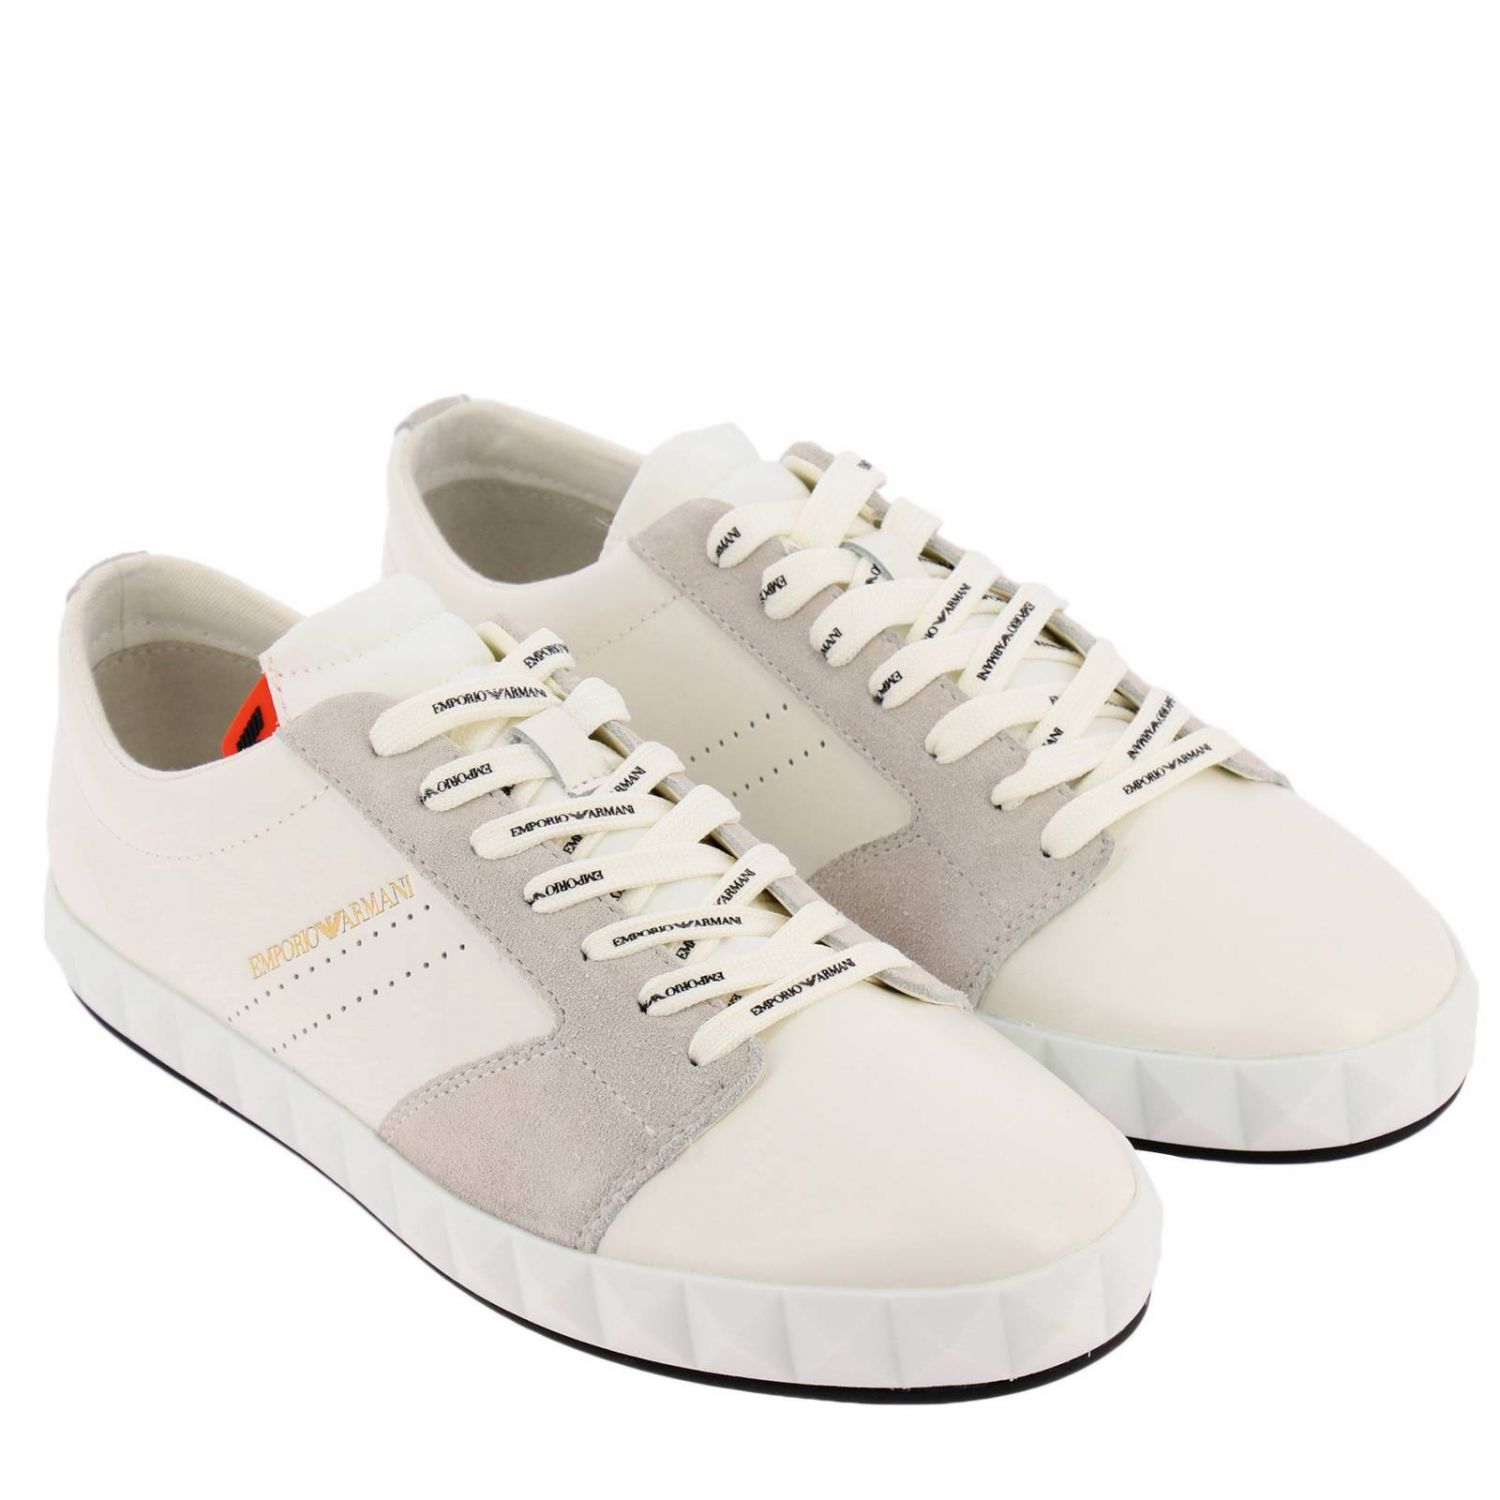 Emporio Armani Outlet: Shoes men | Sneakers Emporio Armani Men White ...